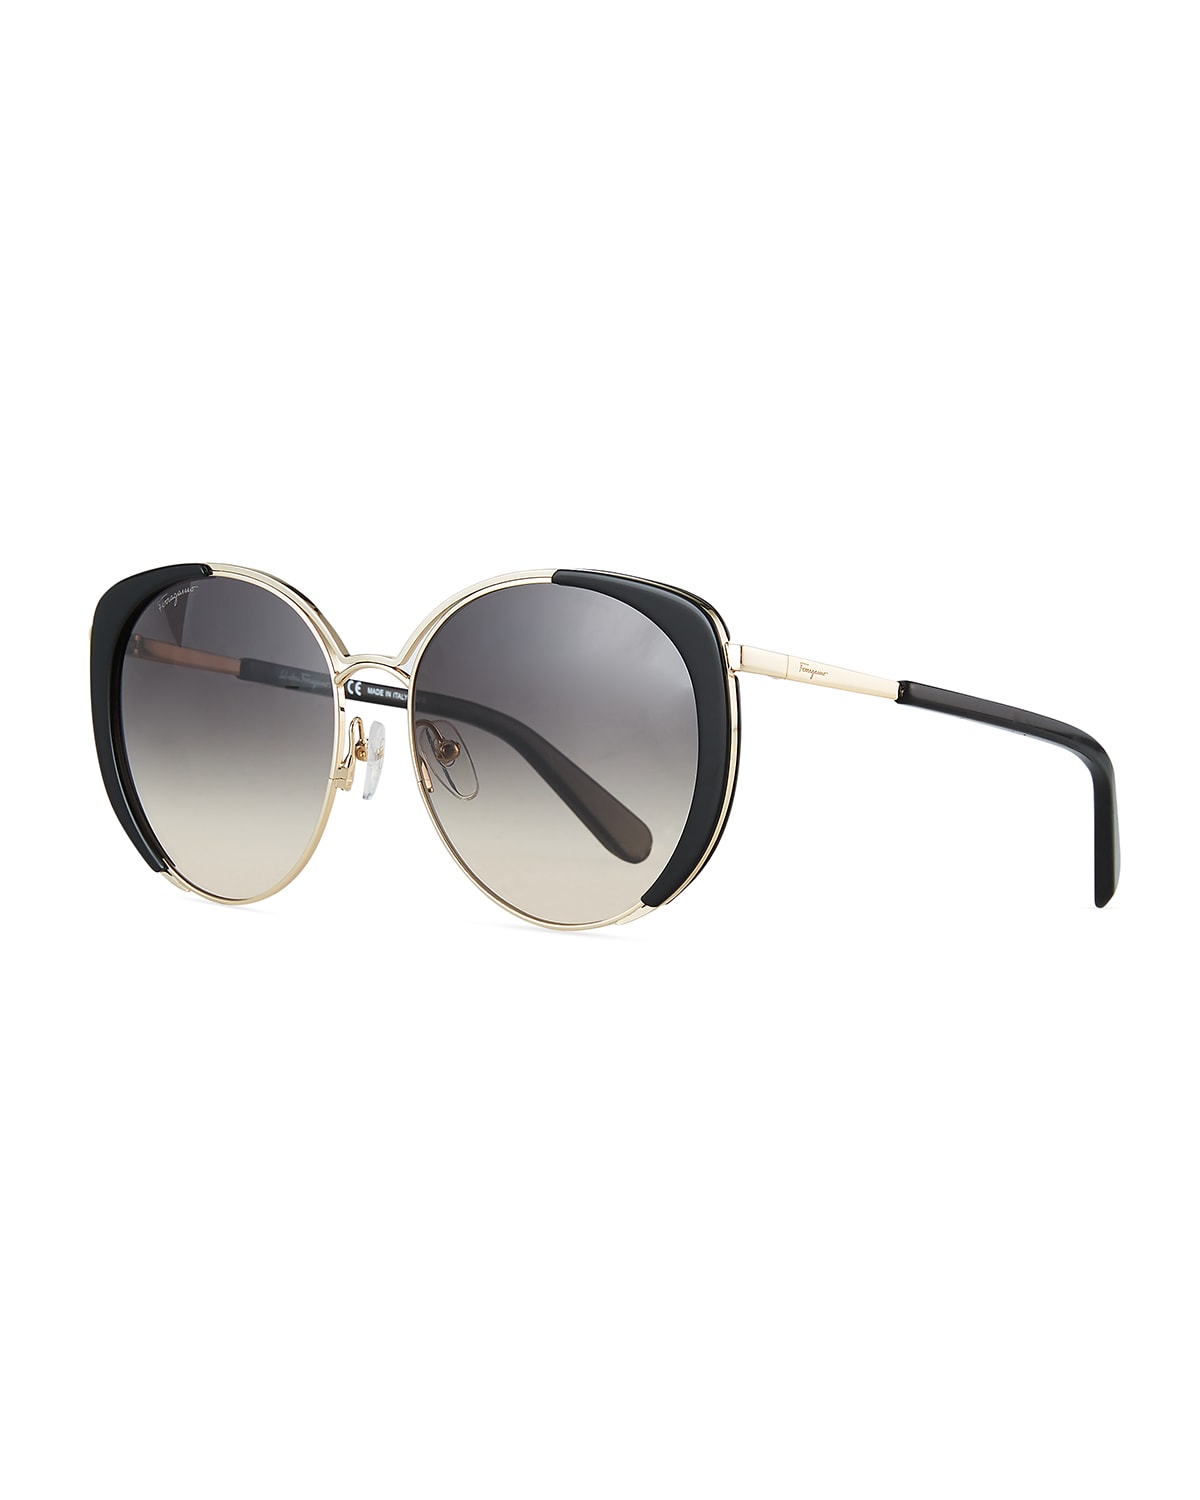 Salvatore Ferragamo Sunglasses | Neiman Marcus